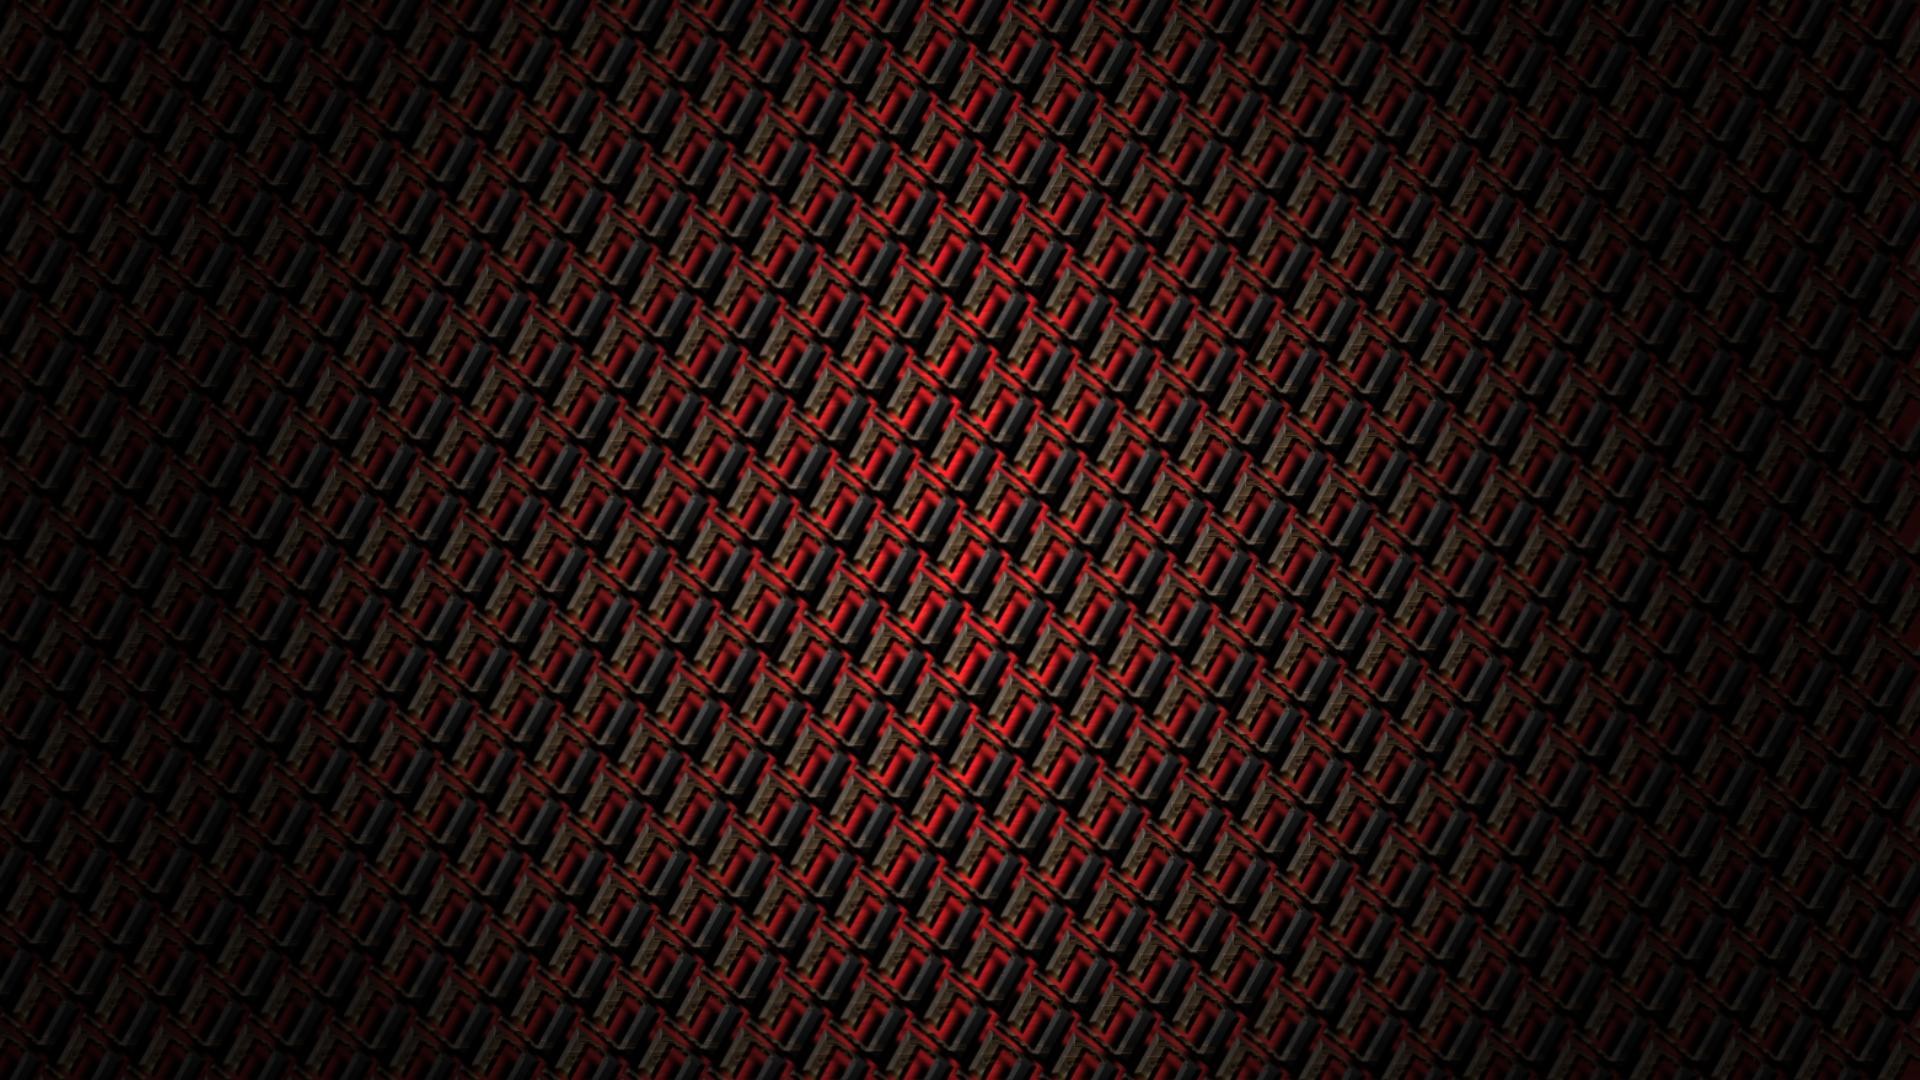 Dark Red Background ·① Download Free Backgrounds For Desktop, Mobile